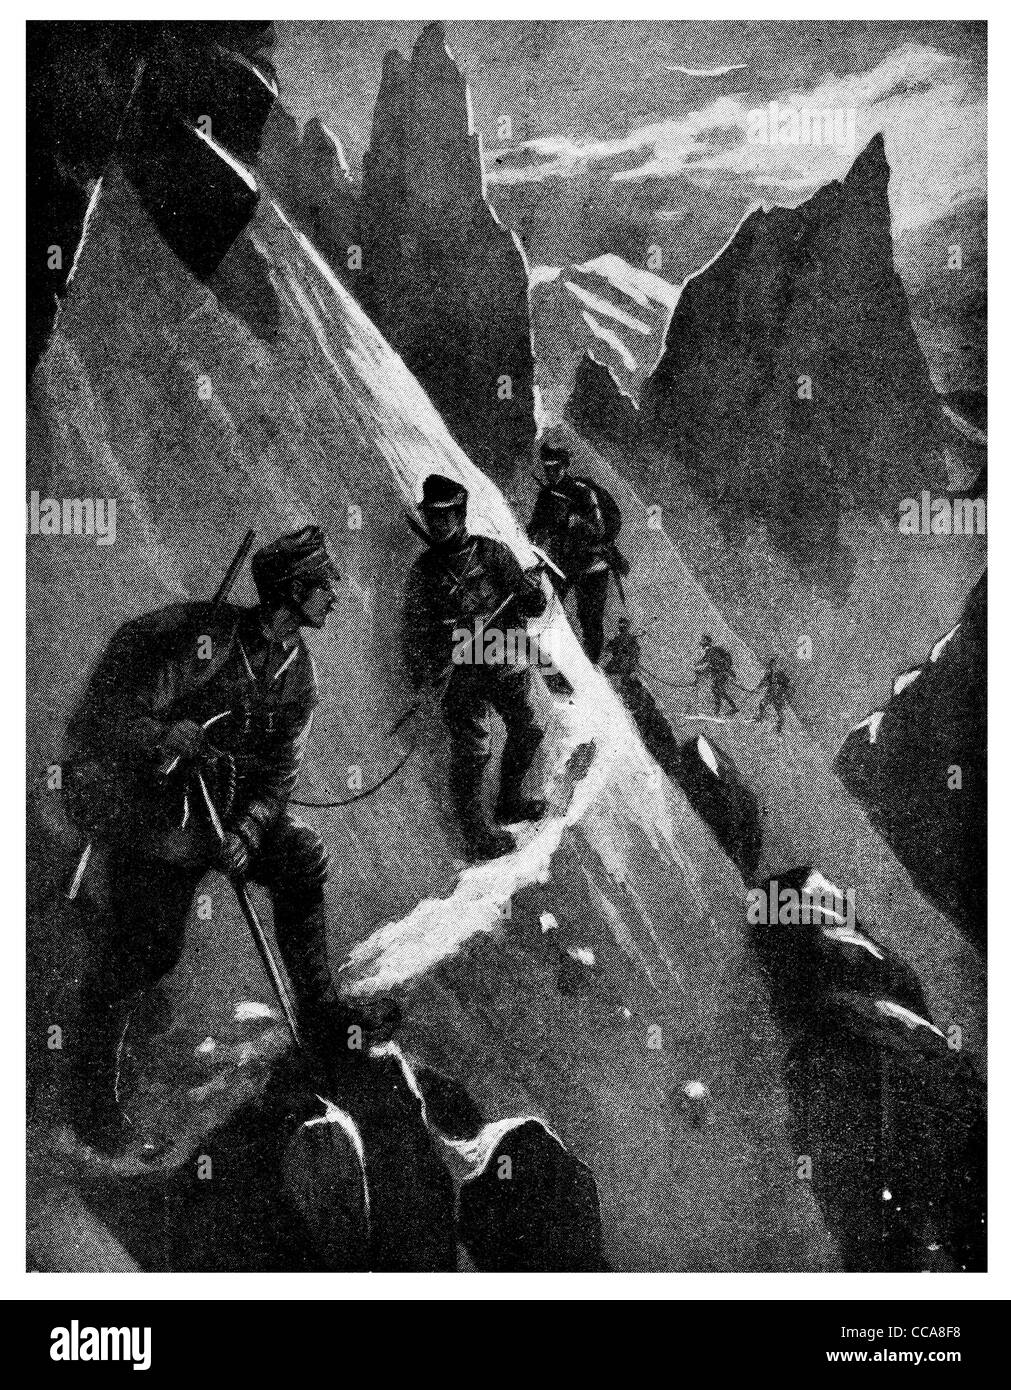 1916 cordes bâton mountaineer qualifiés montagne Dolomites patrouille de nuit glace neige rocher falaise escalade climber Banque D'Images